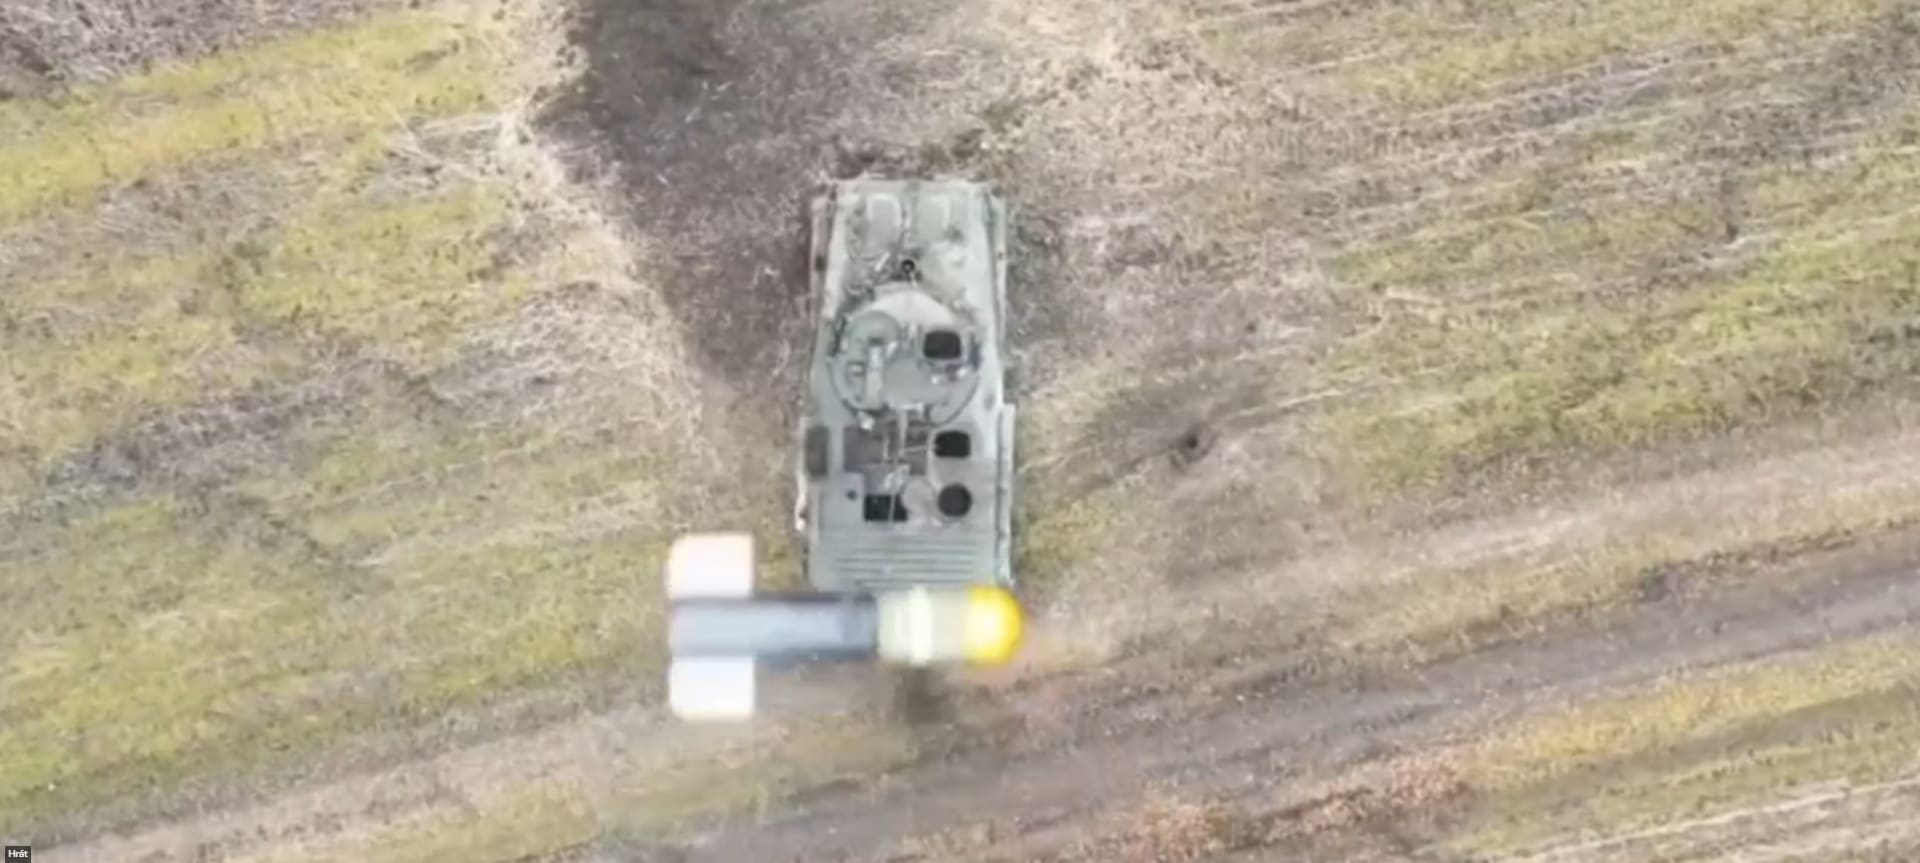 Bomba ukrajinského dronu proletěla přímo poklopem ruského obrněnce.